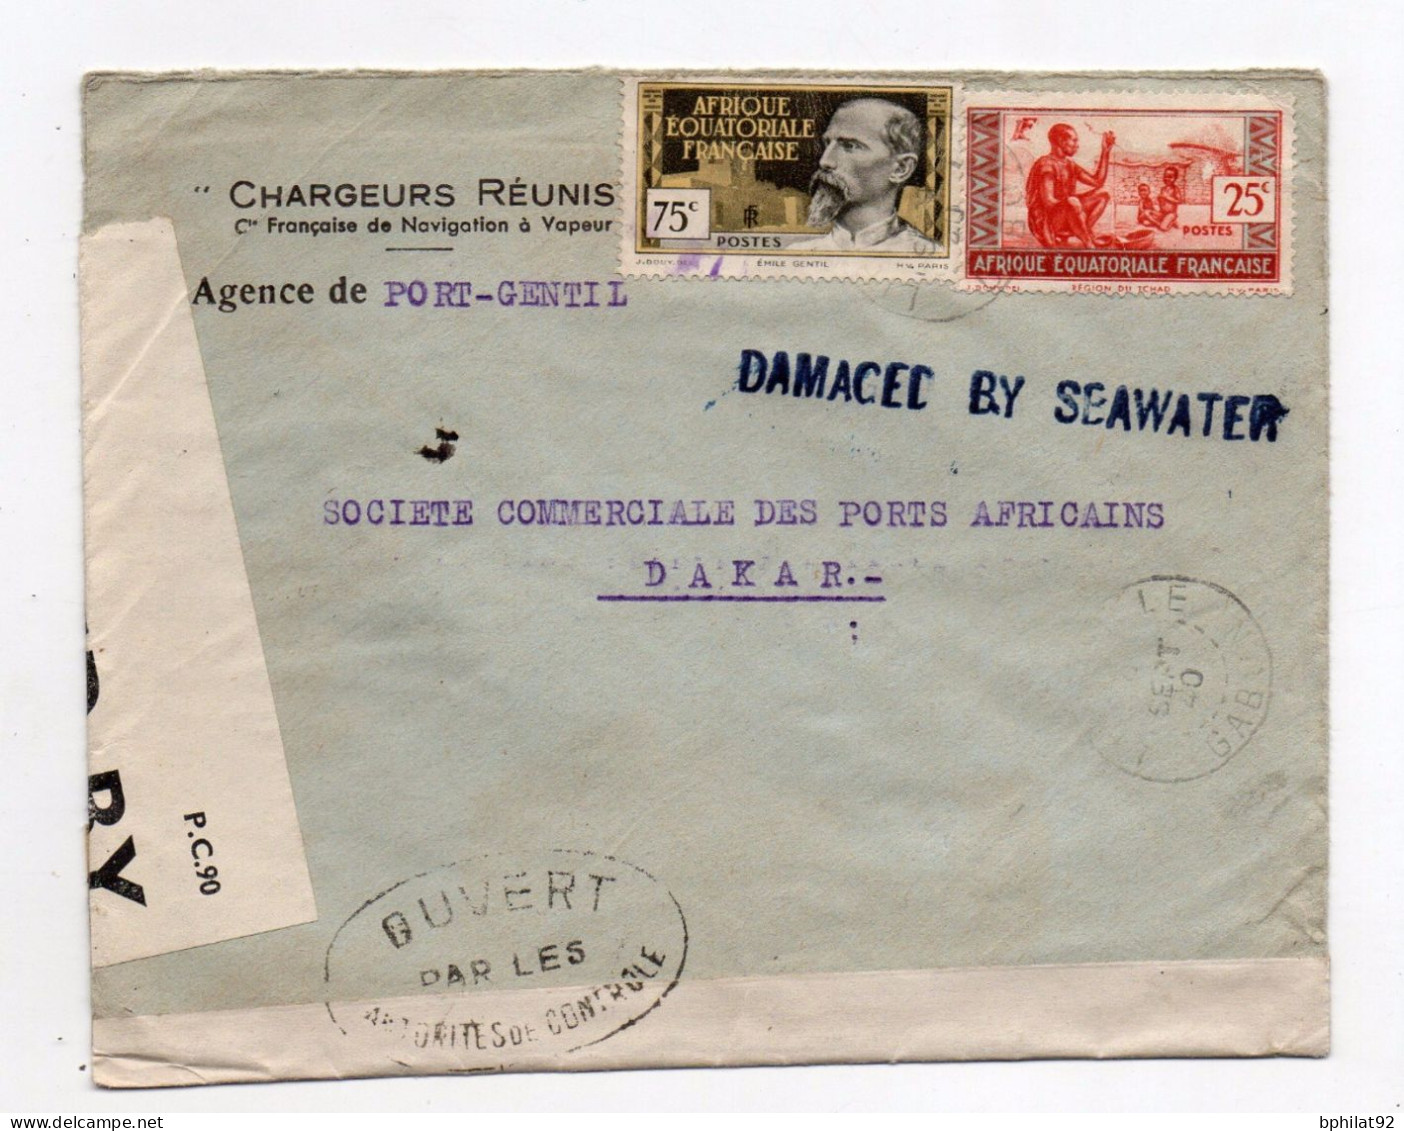 !!! LETTRE DE PORT GENTIL DE SEPTEMBRE 1940 POUR DAKAR, MARQUE LINEAIRE BLEUE "DAMAGED BY SEAWATER" - Cartas Accidentadas